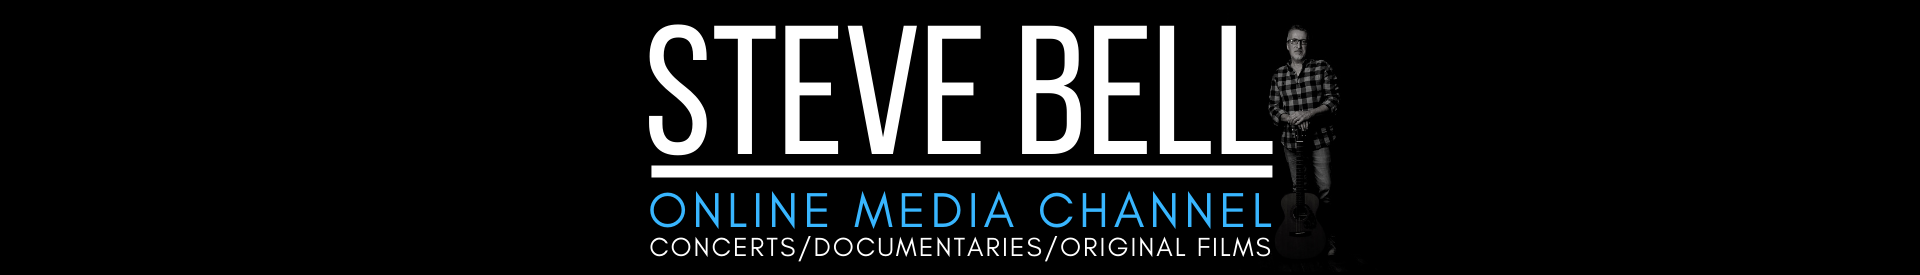 Steve Bell Online Media Channel